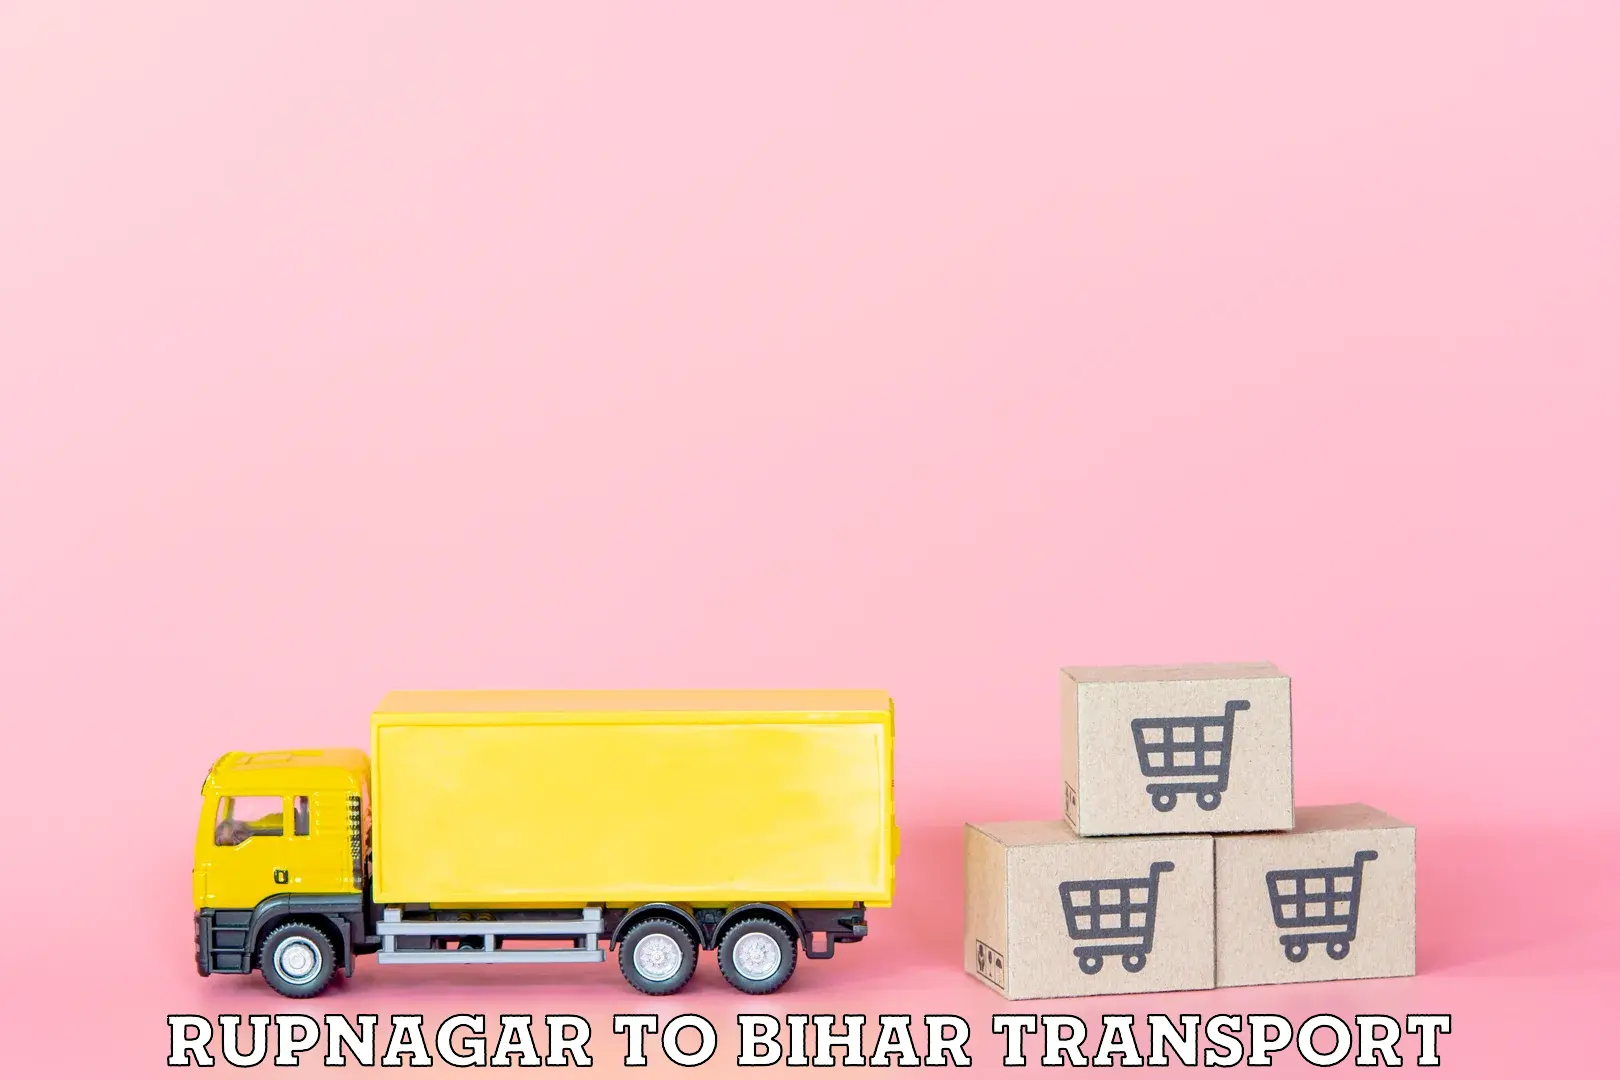 Daily transport service Rupnagar to Jaynagar